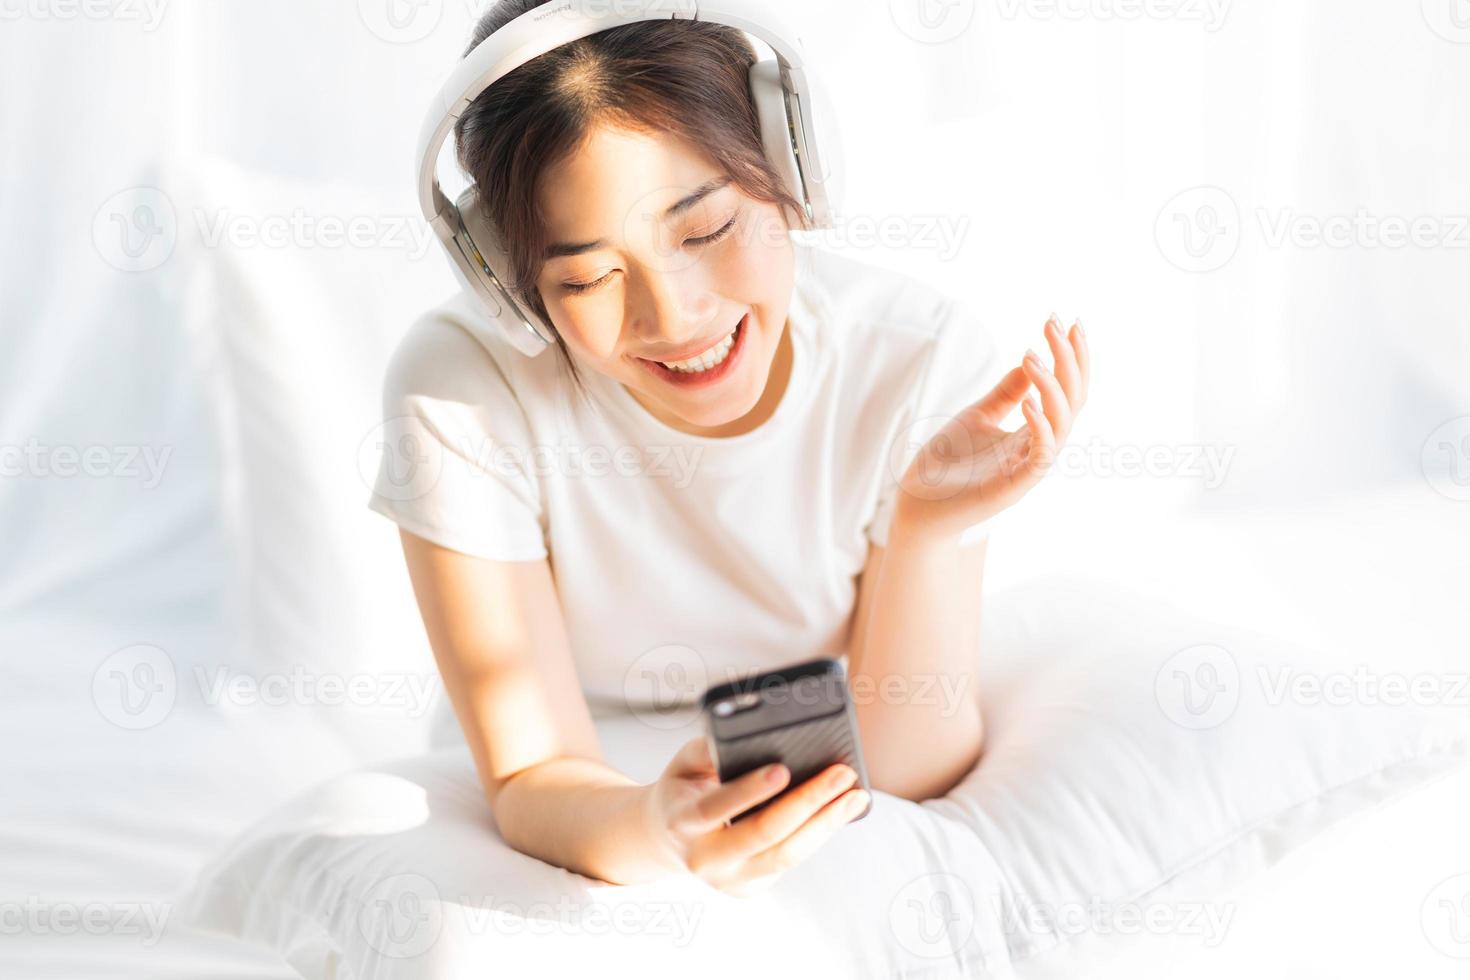 jovem sentada na cama ouvindo música divertida foto